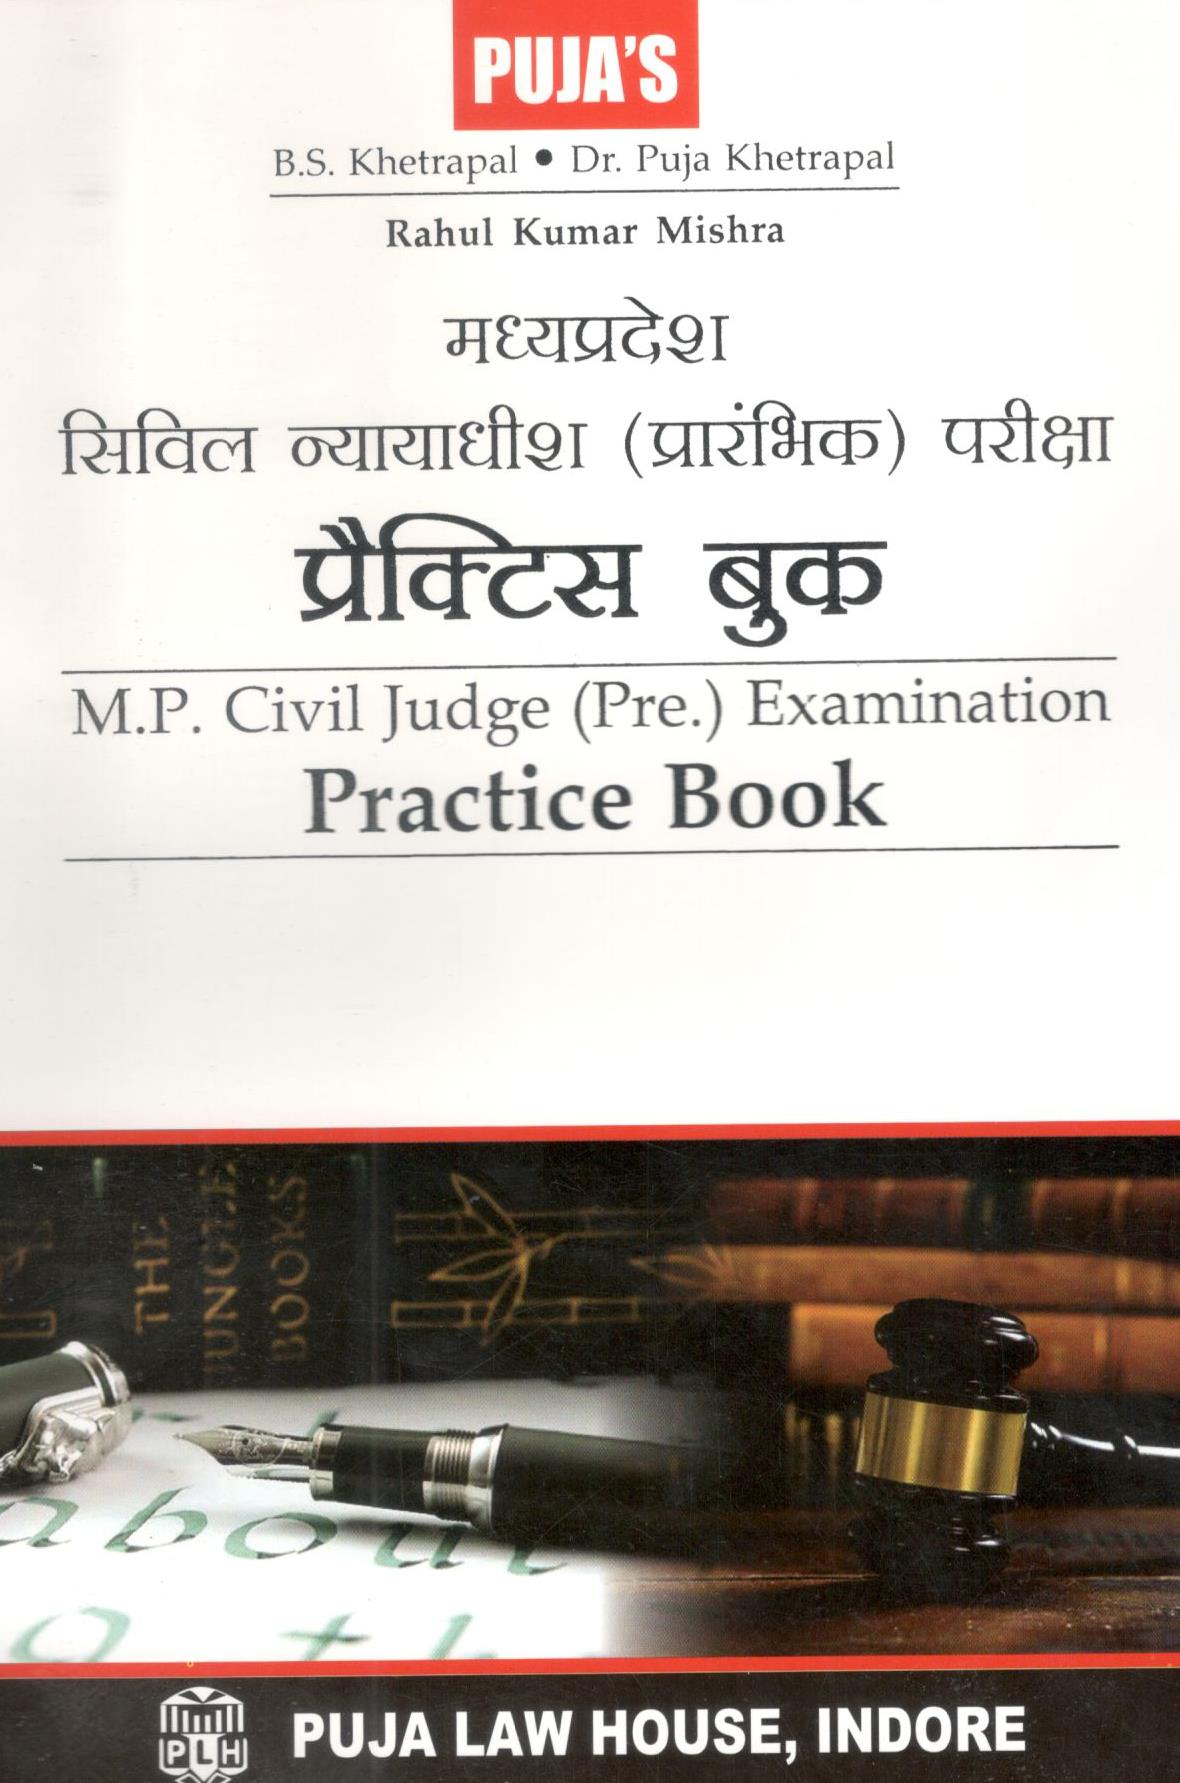  Buy M.P. Civil Judge (Pre.) Exam. Practice Book / बी.एस. खेत्रपाल | राहुल मिश्रा | डॉ पूजा खेत्रपाल मध्य प्रदेश सिविल न्यायाधीश (प्रारंभिक) परीक्षा प्रैक्टिस बुक